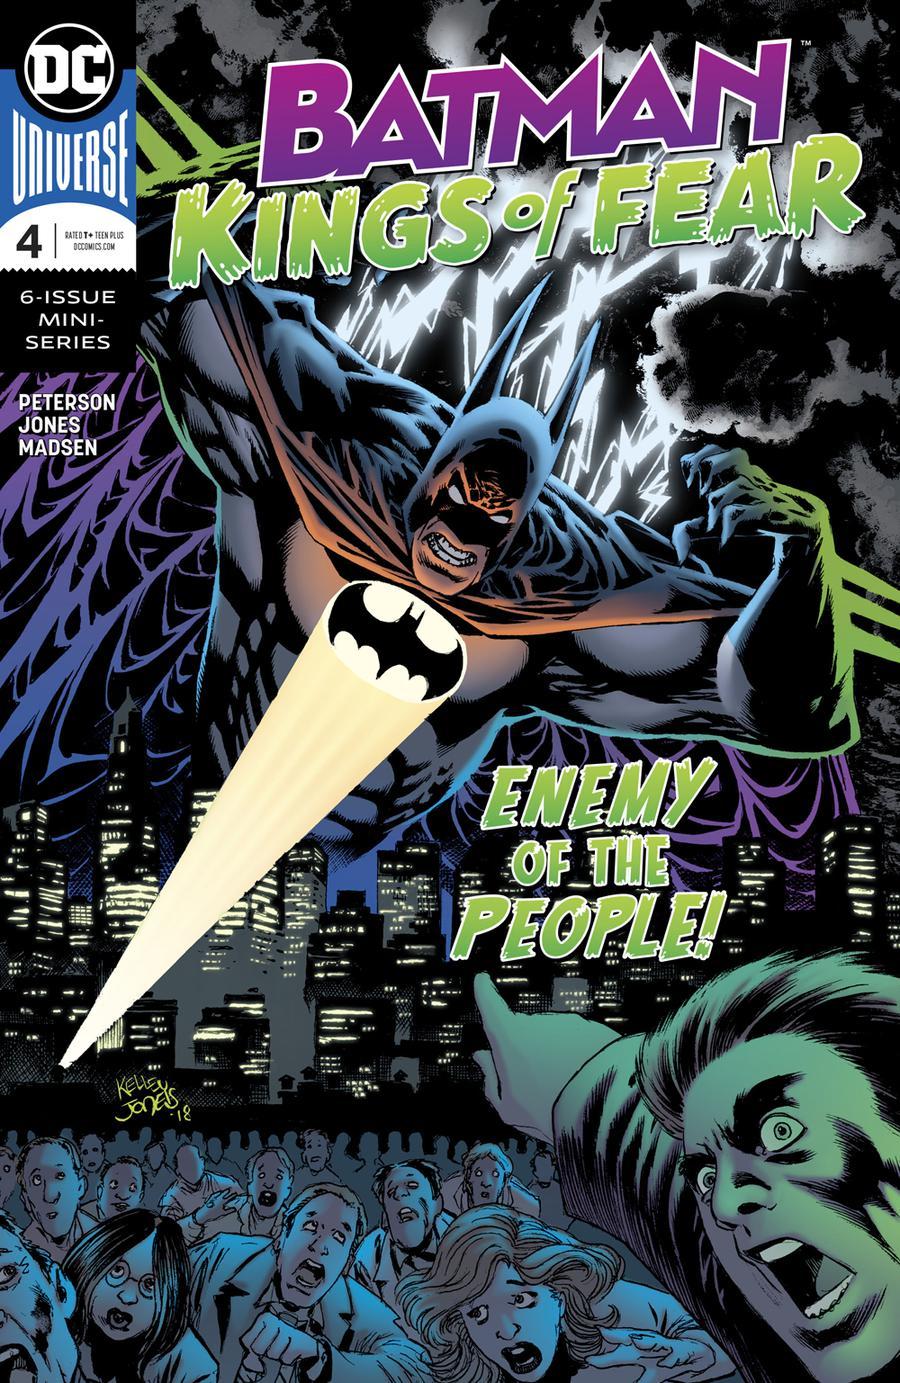 Batman Kings Of Fear Vol. 1 #4